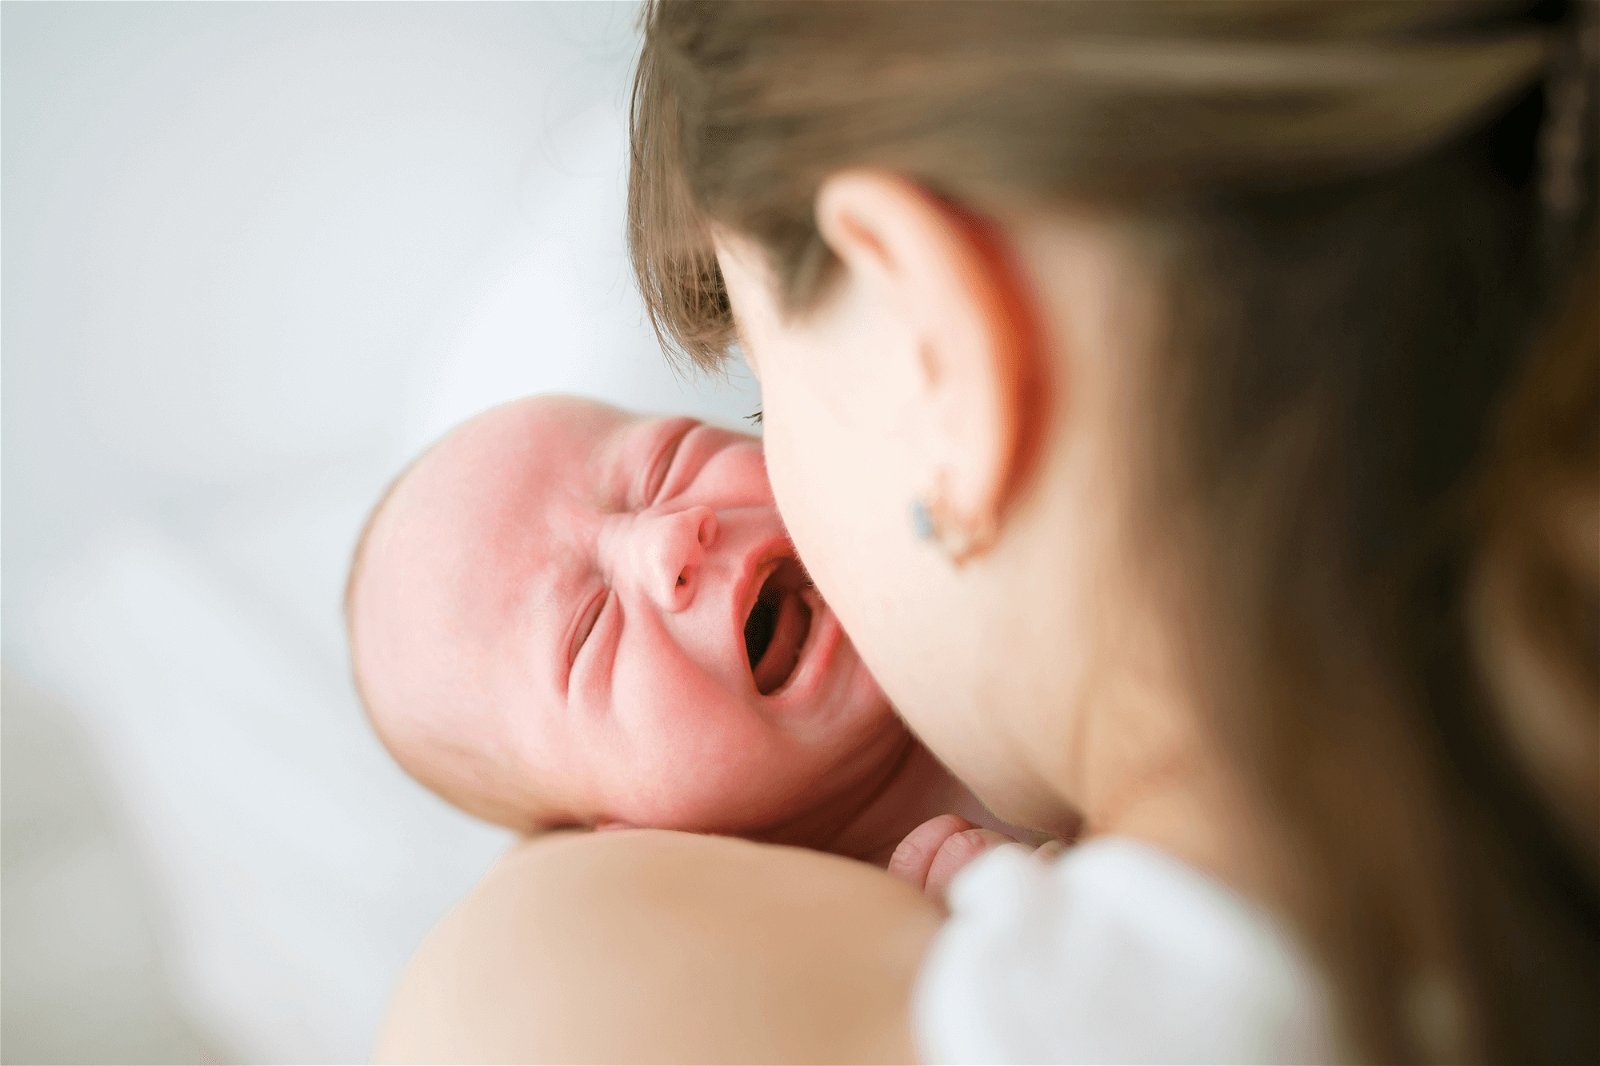 分娩后体内的荷尔蒙产生巨大变化， 加上生产过程的痛楚、体力消耗，产后角色 转变、照顾新生儿剥夺睡眠时间等等，都会造成新生儿妈妈心情忧郁。